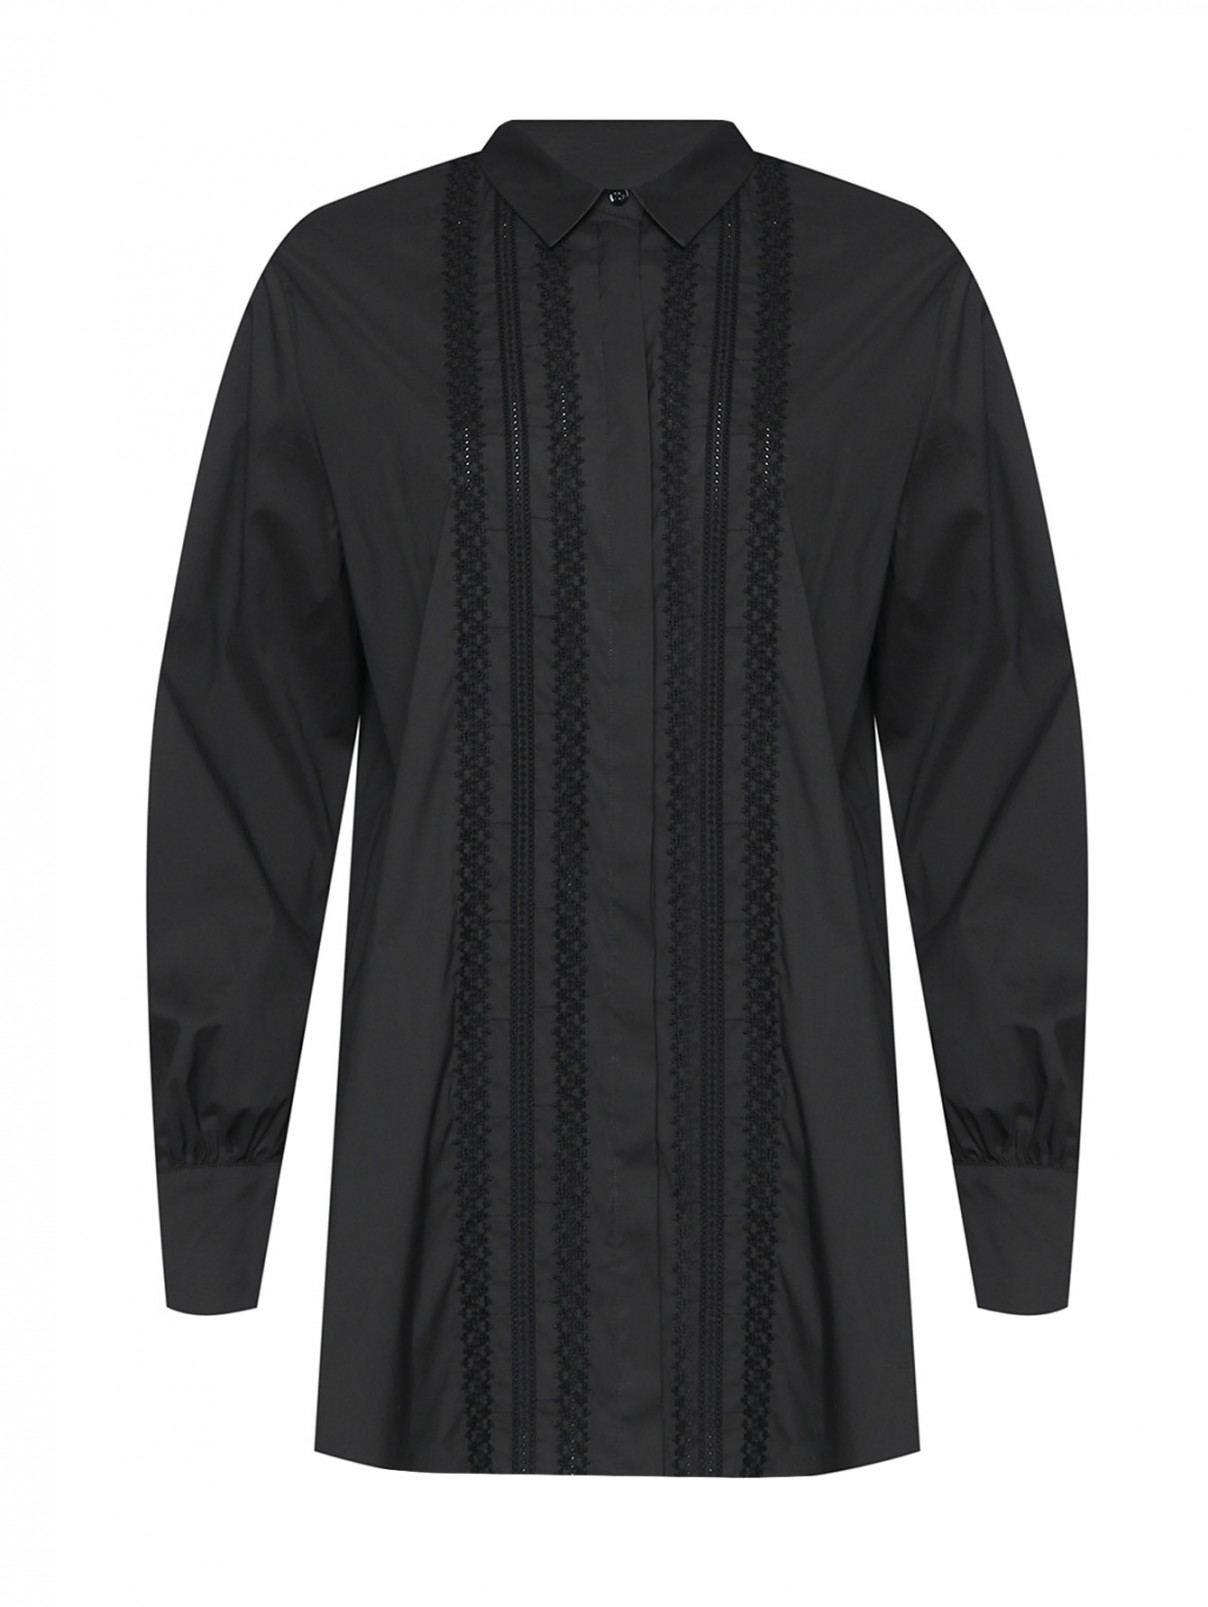 Блуза с вышивкой Marina Rinaldi  –  Общий вид  – Цвет:  Черный